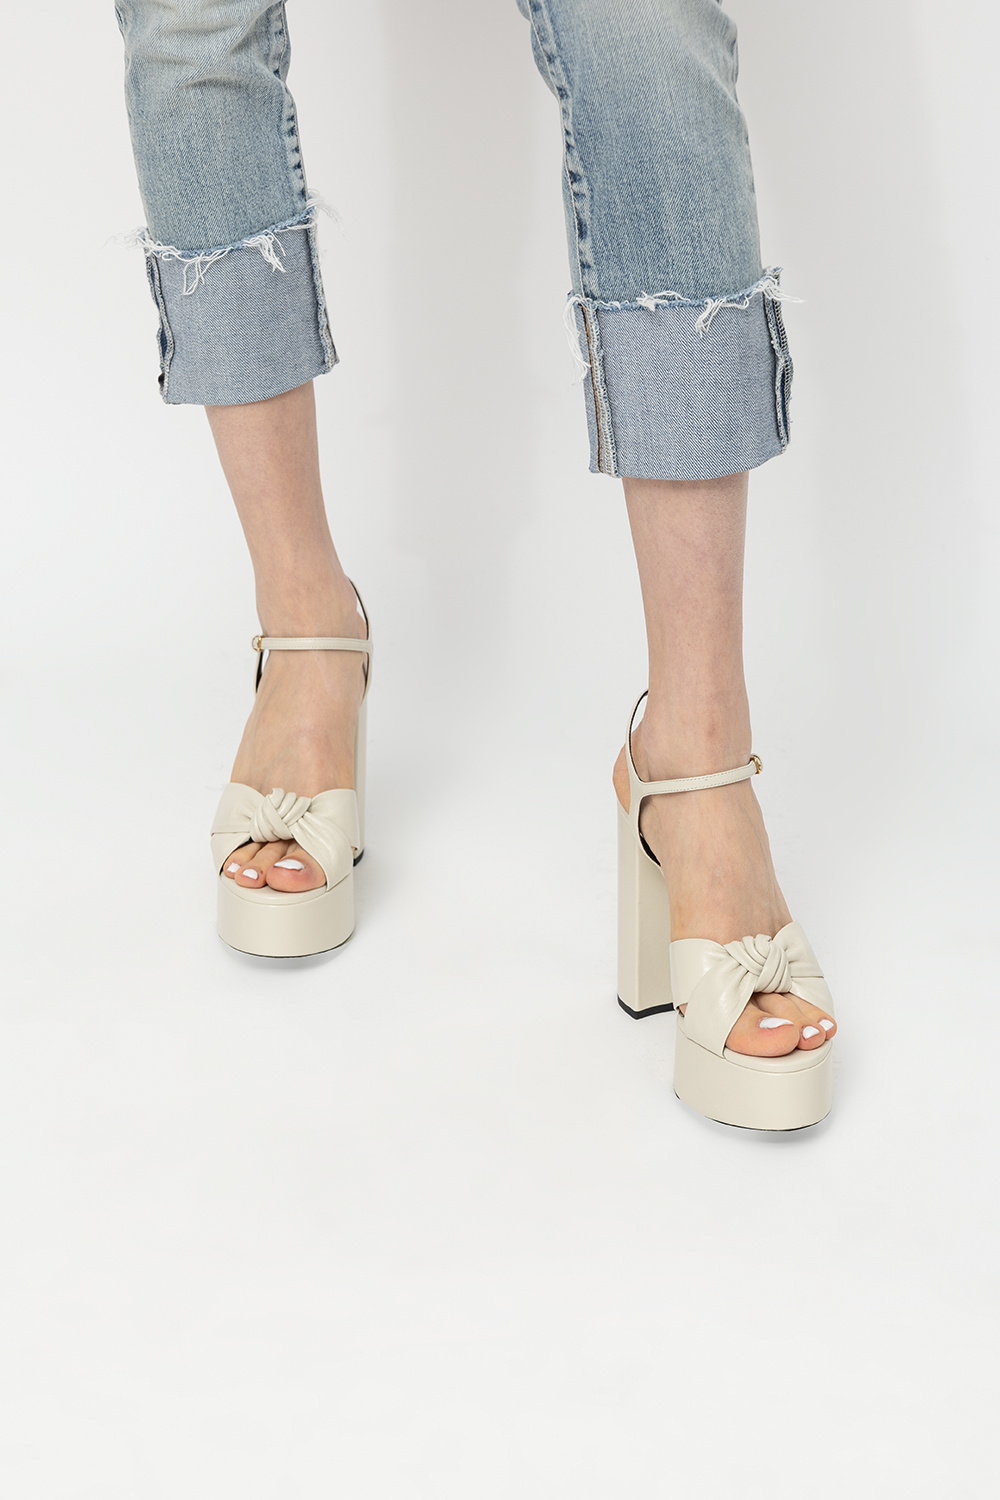 Saint Laurent ‘Bianca’ jumpsuit sandals